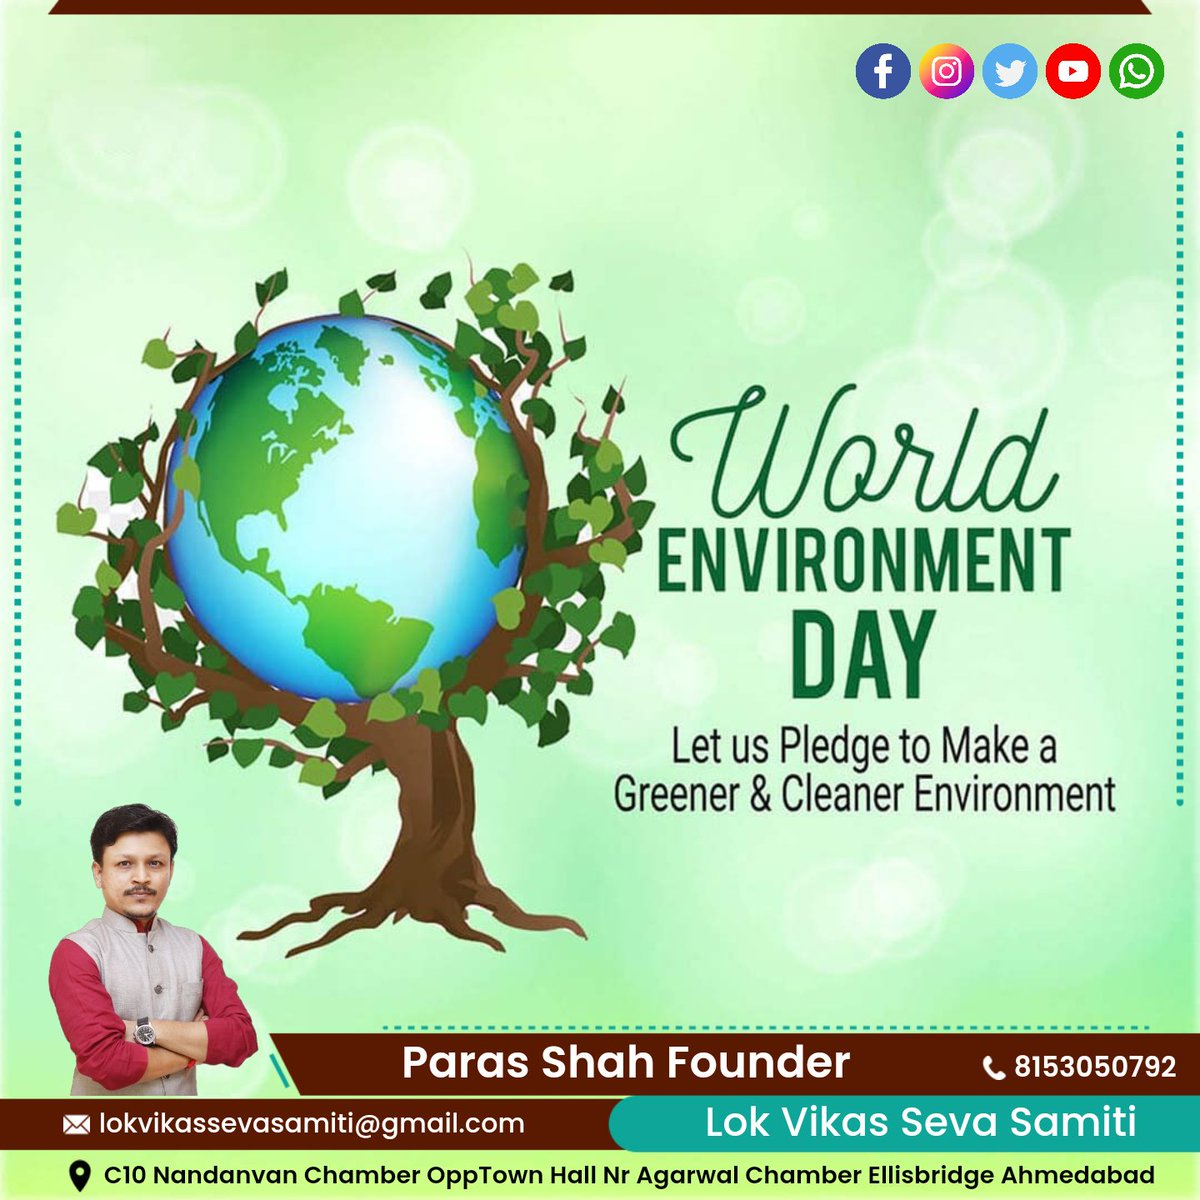 विश्व पर्यावरण दिवस की आप सभी को हार्दिक शुभकामनाएं। 

आइए पर्यावरण दिवस के इस अवसर पर प्रण लें की हम सभी पर्यावरण को बेहतर बनाने के लिए हर संभव प्रयास करेंगे।

#WorldEnvironmentDay #parasshah #lvss #lokvikassevasamiti #lvssgujarat #lvssteam